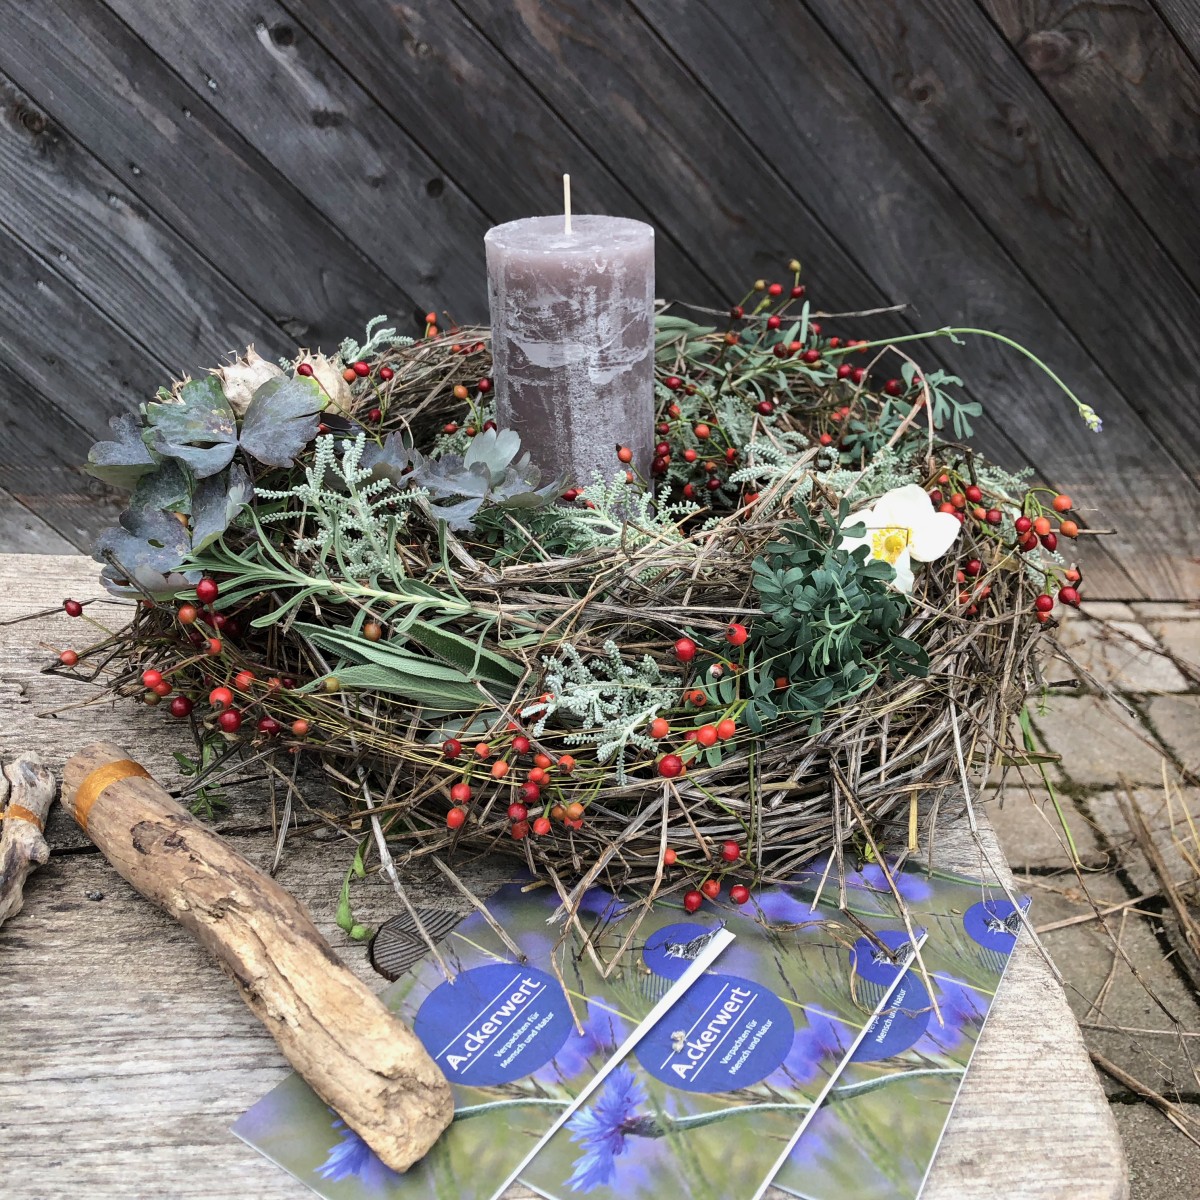 Kerzenkranz aus bunten, herbstlichen Pflanzen mit Flyern des Ackerwert Projekts auf einer Holzbank